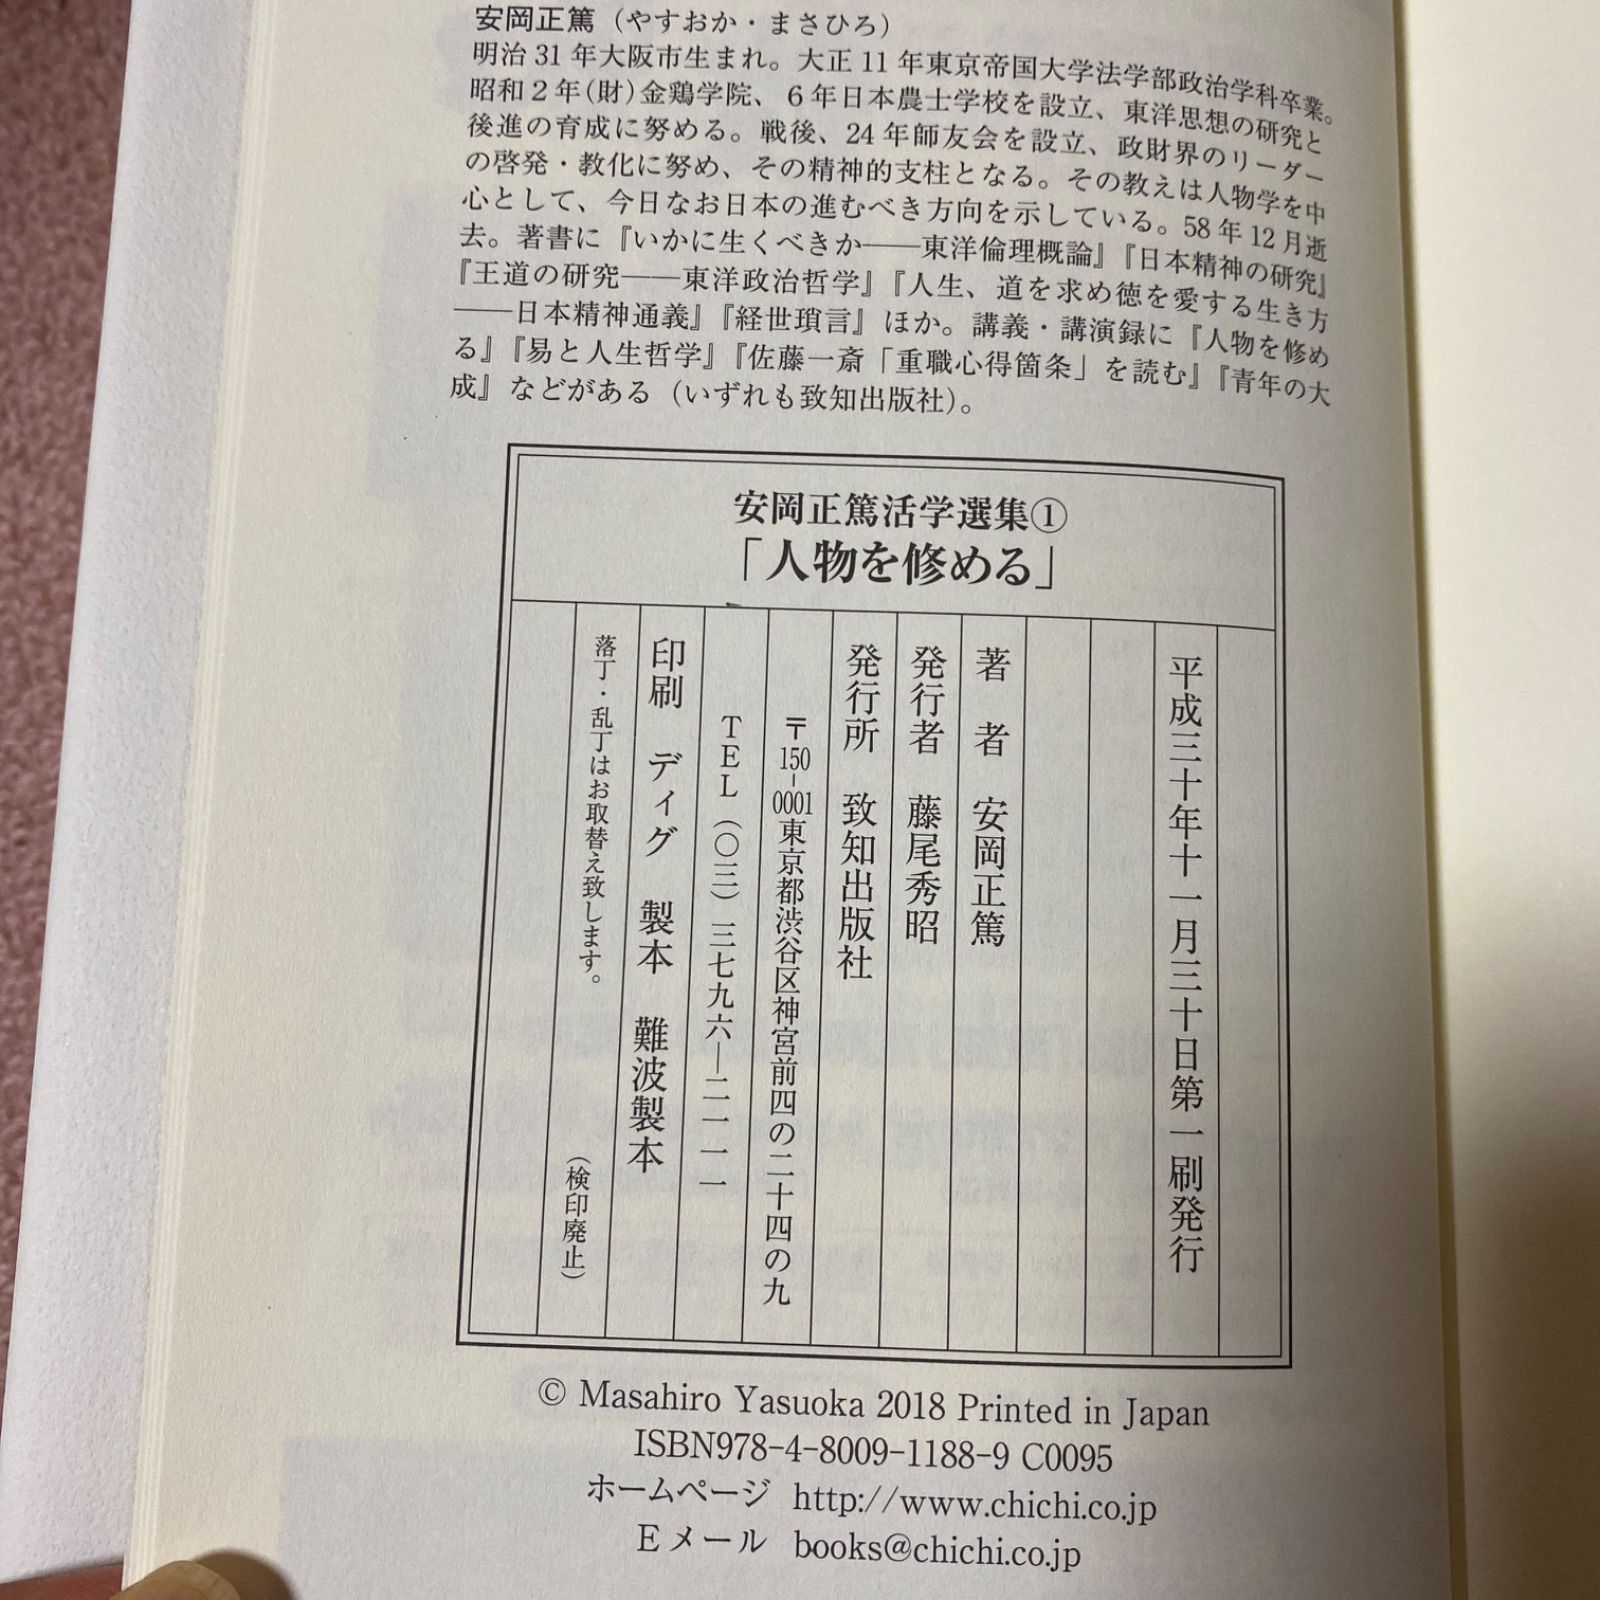 安岡正篤 活学選集 10巻セット - メルカリ